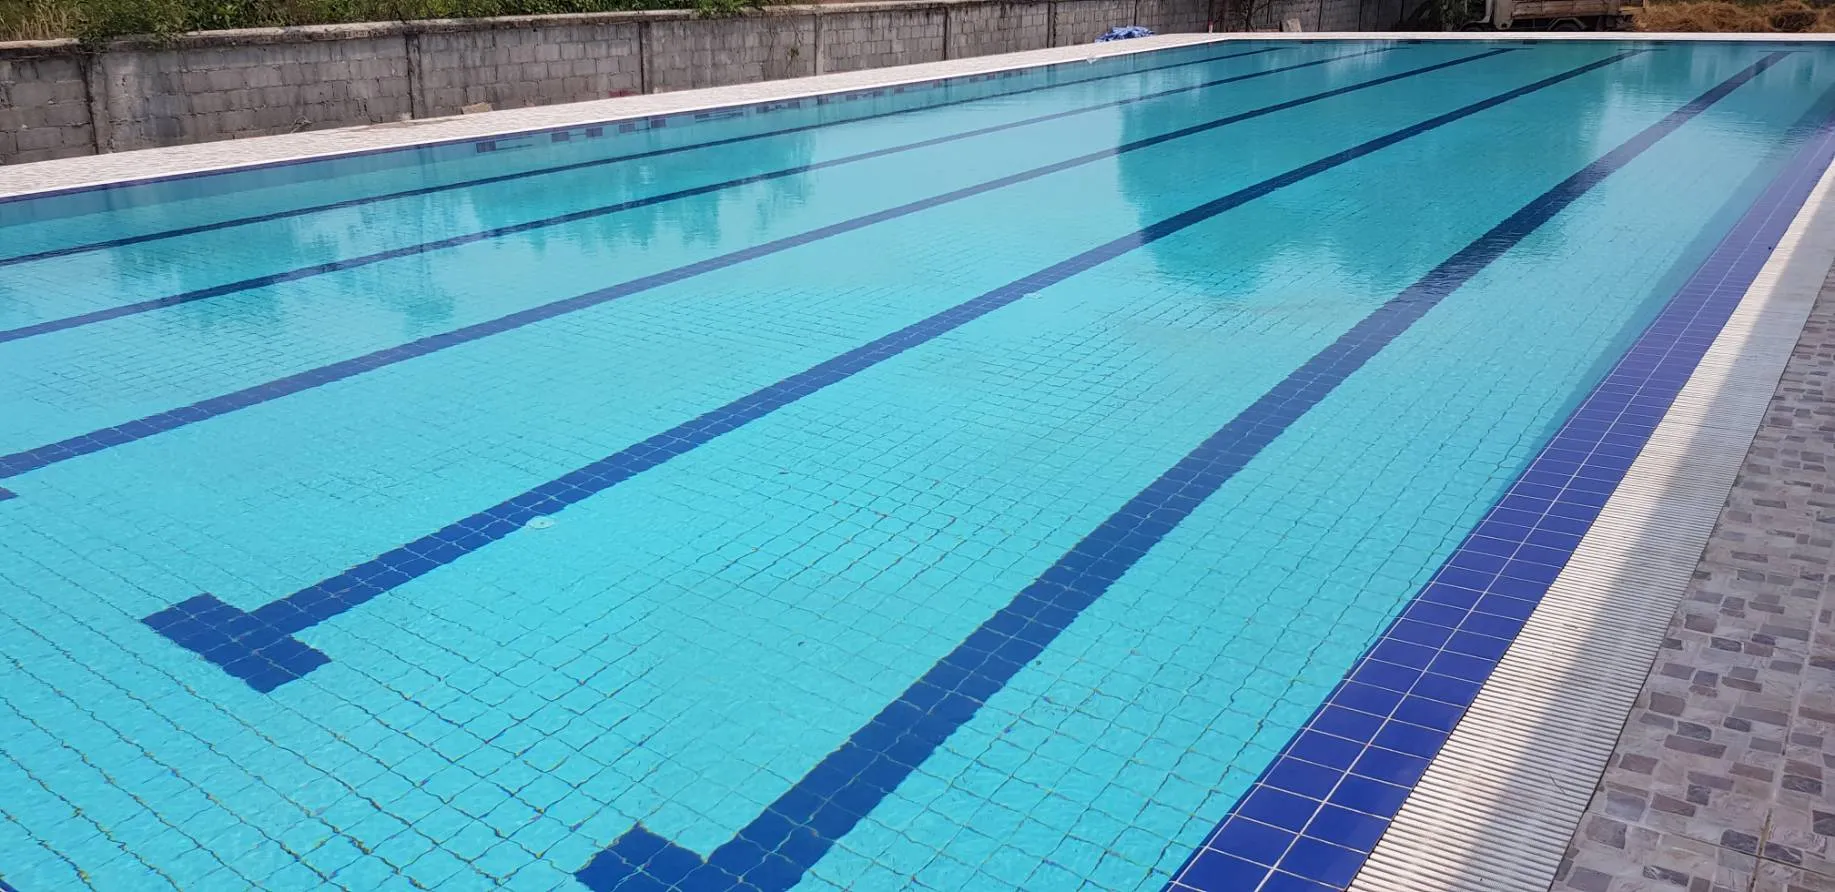 Tcp pool บริษัทรับออกแบบ สร้างสระว่ายน้ำคอนกรีต ให้เข้ากับตัวบ้าน 